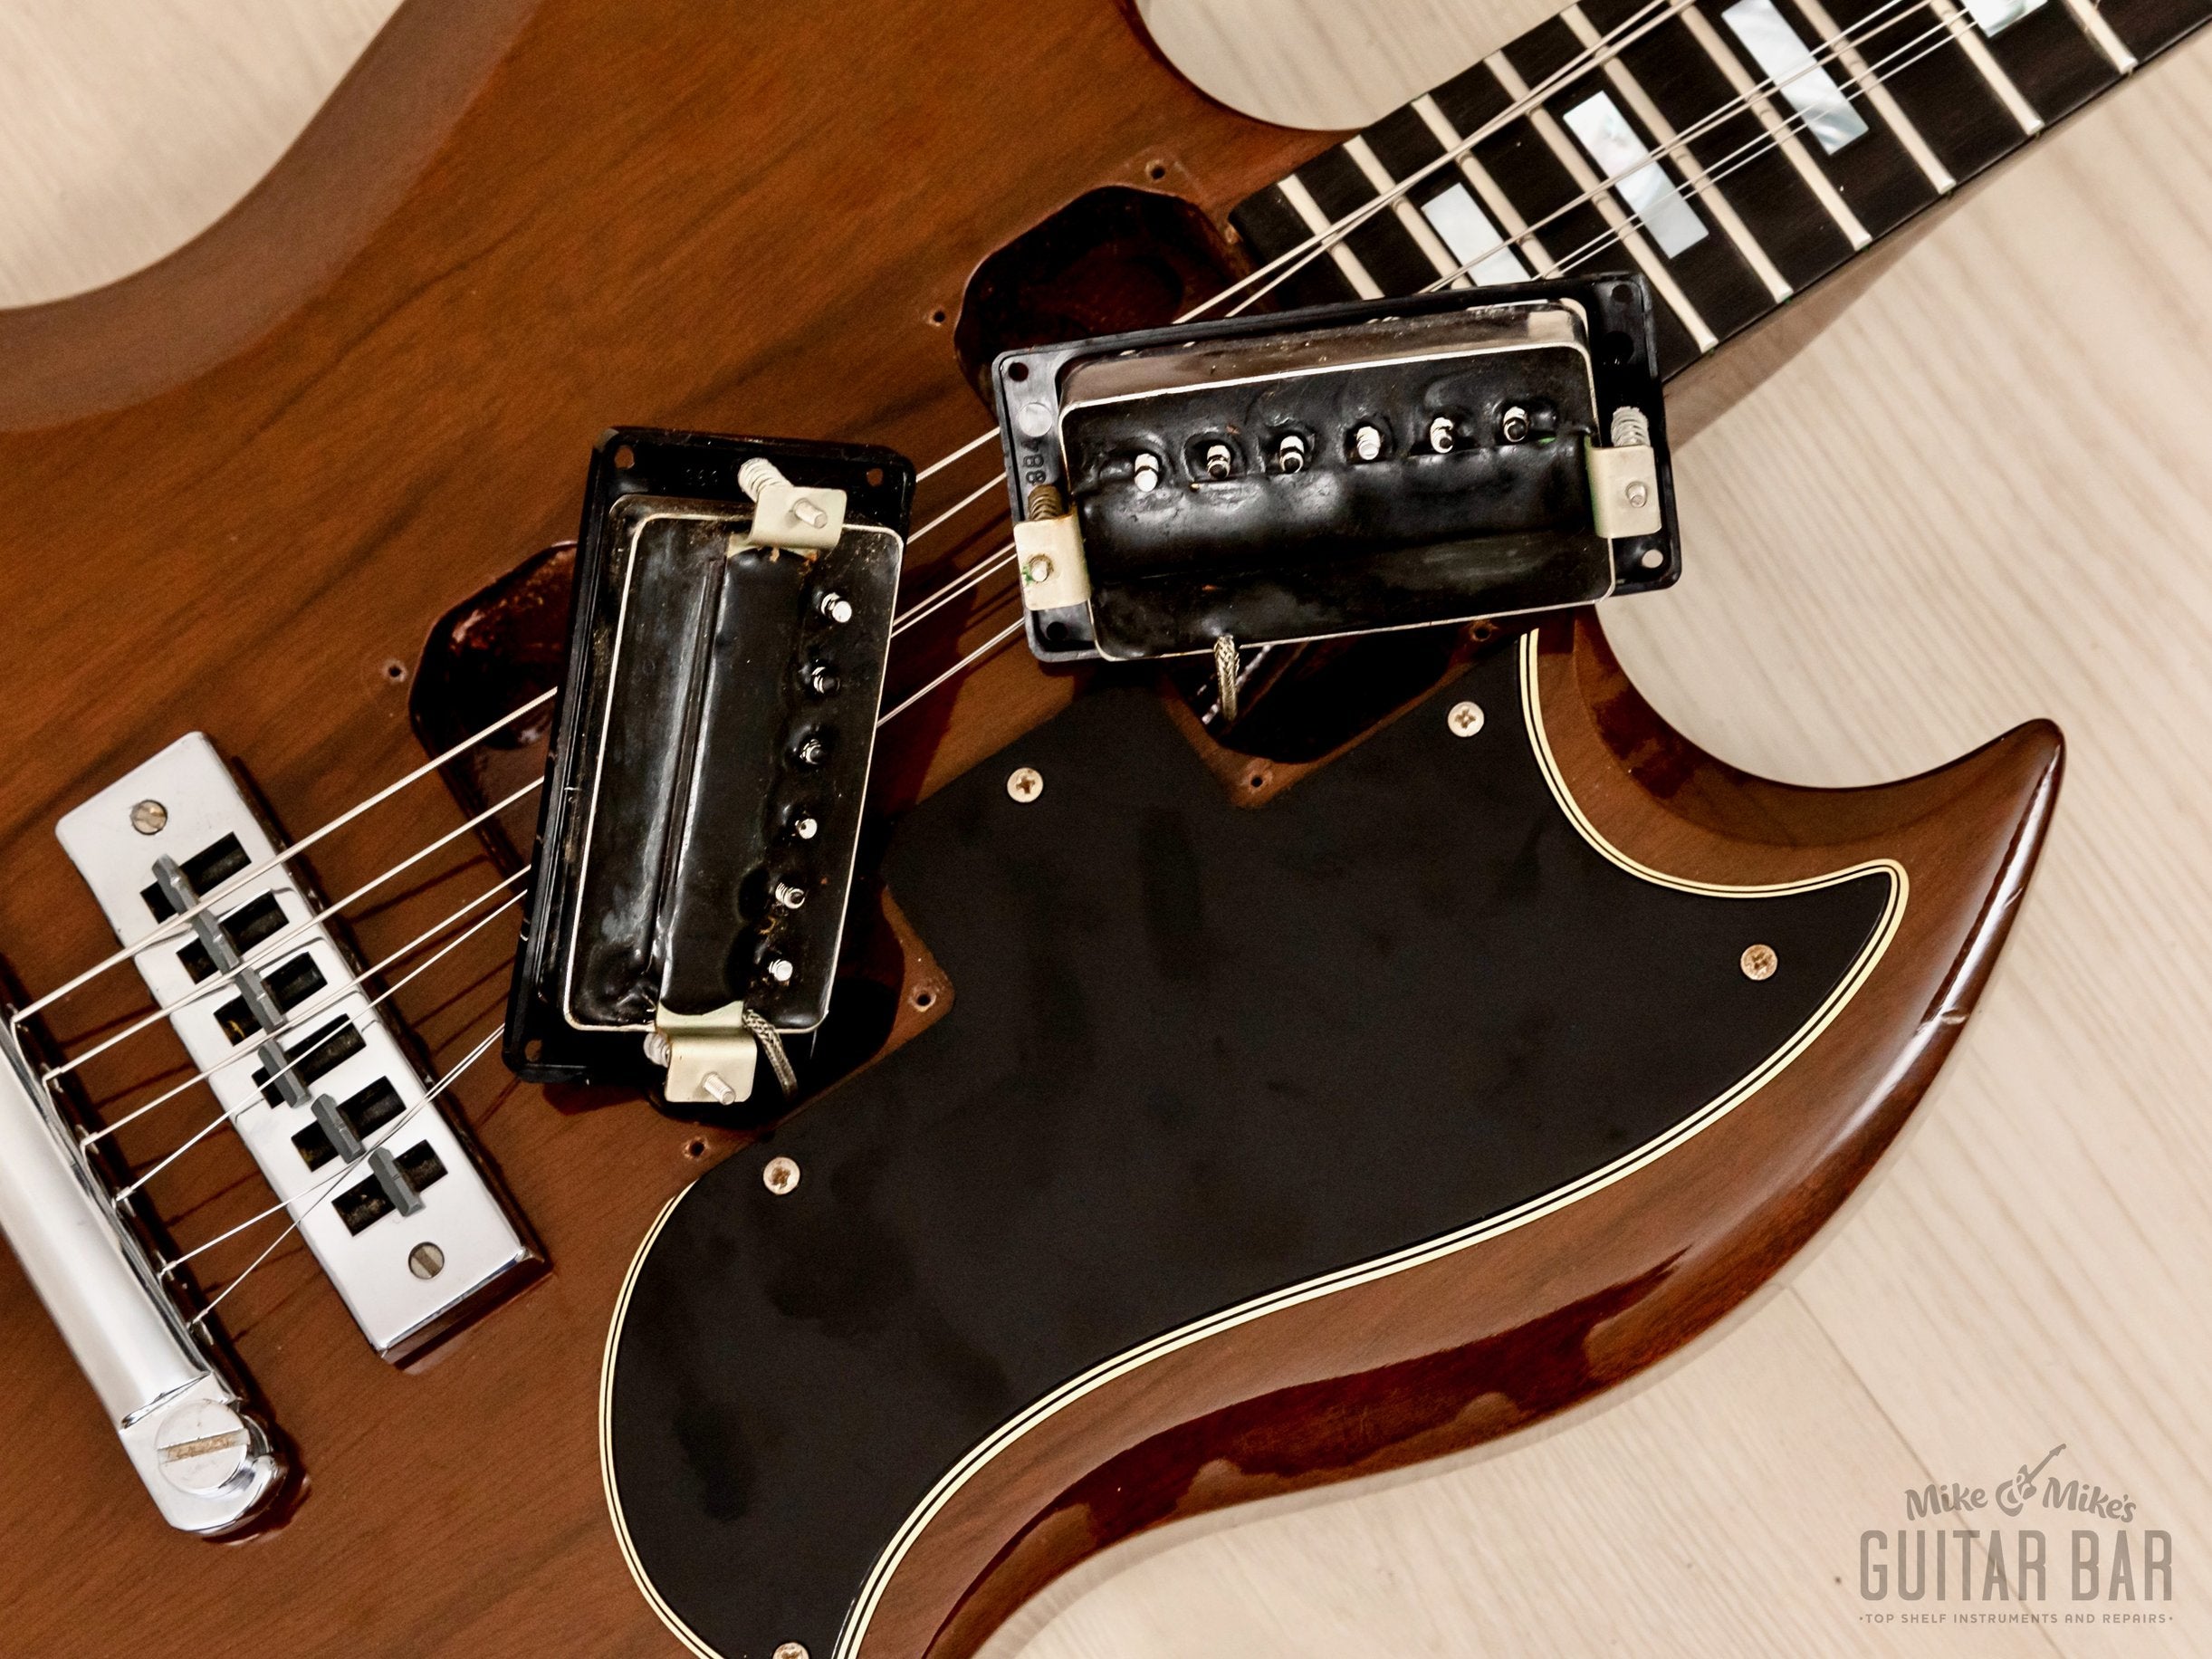 1973 Gibson SG Standard Vintage Guitar Walnut w/ Ebony Board, Tarback Pickups, Case